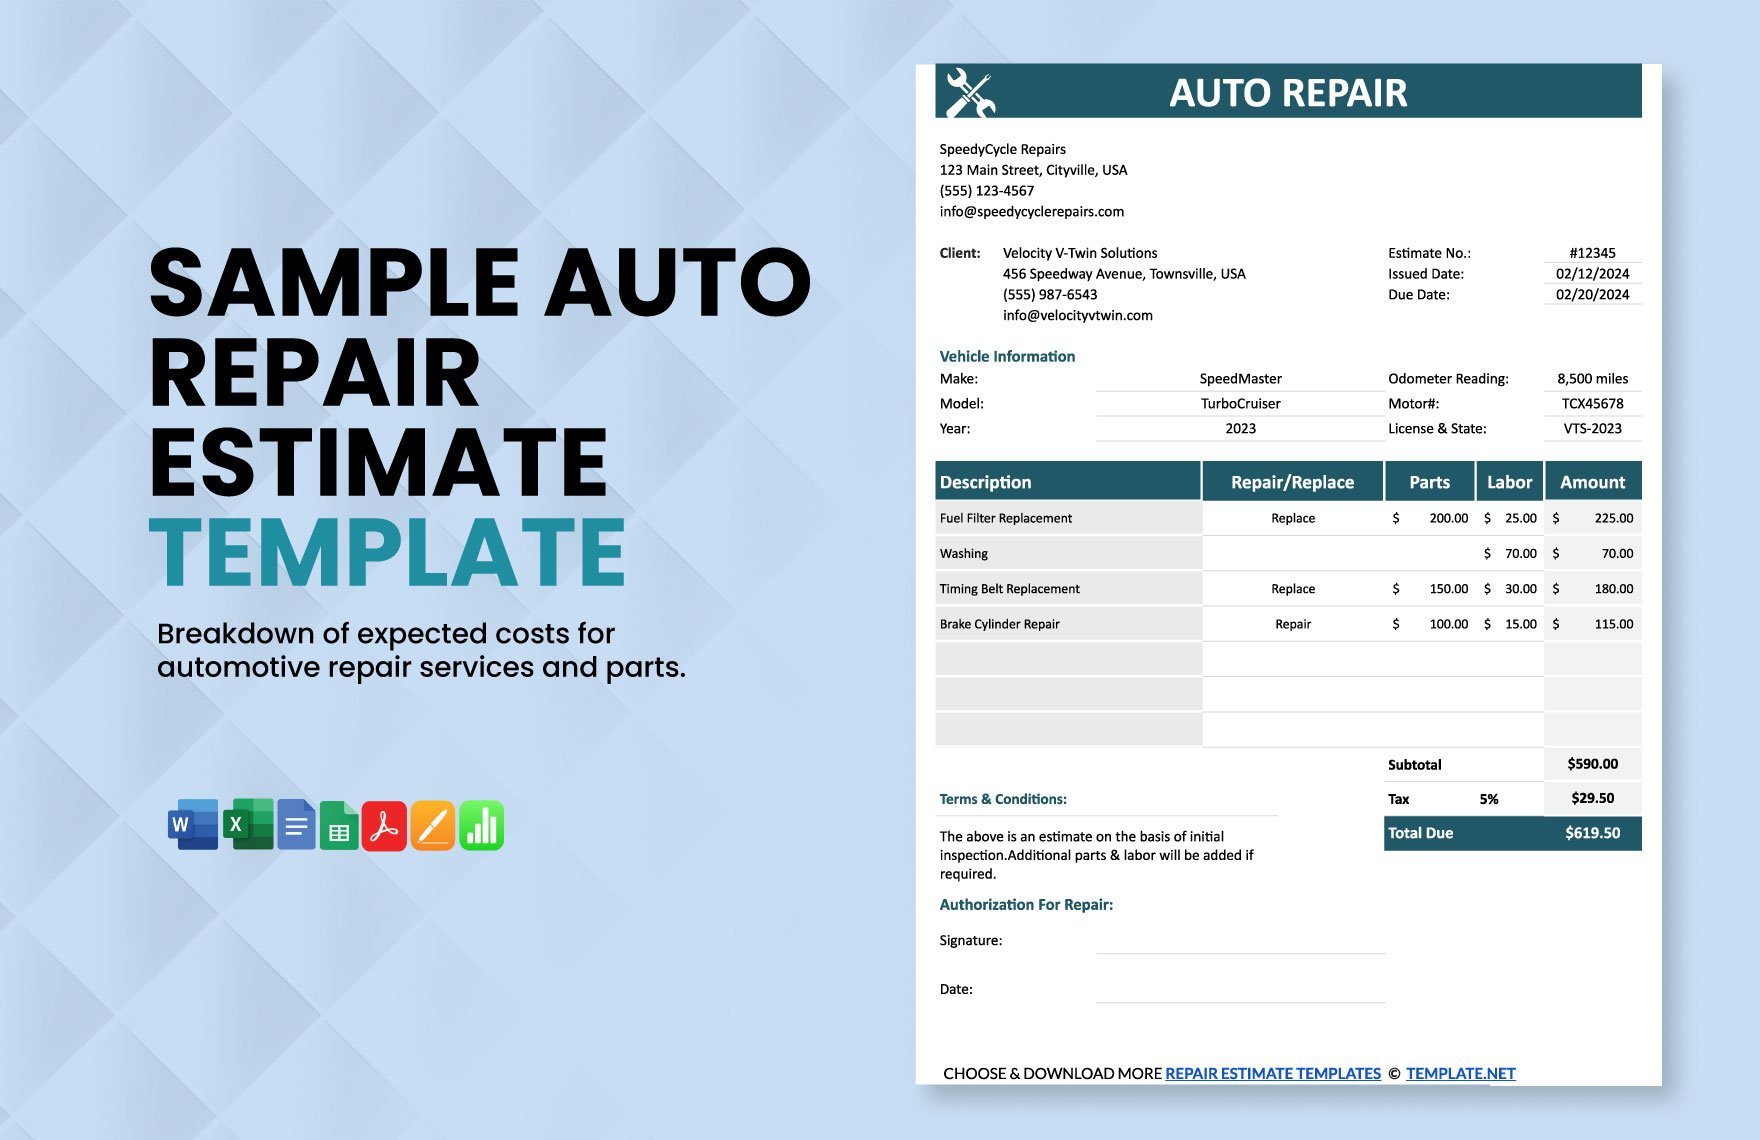 Sample Auto Repair Estimate Template